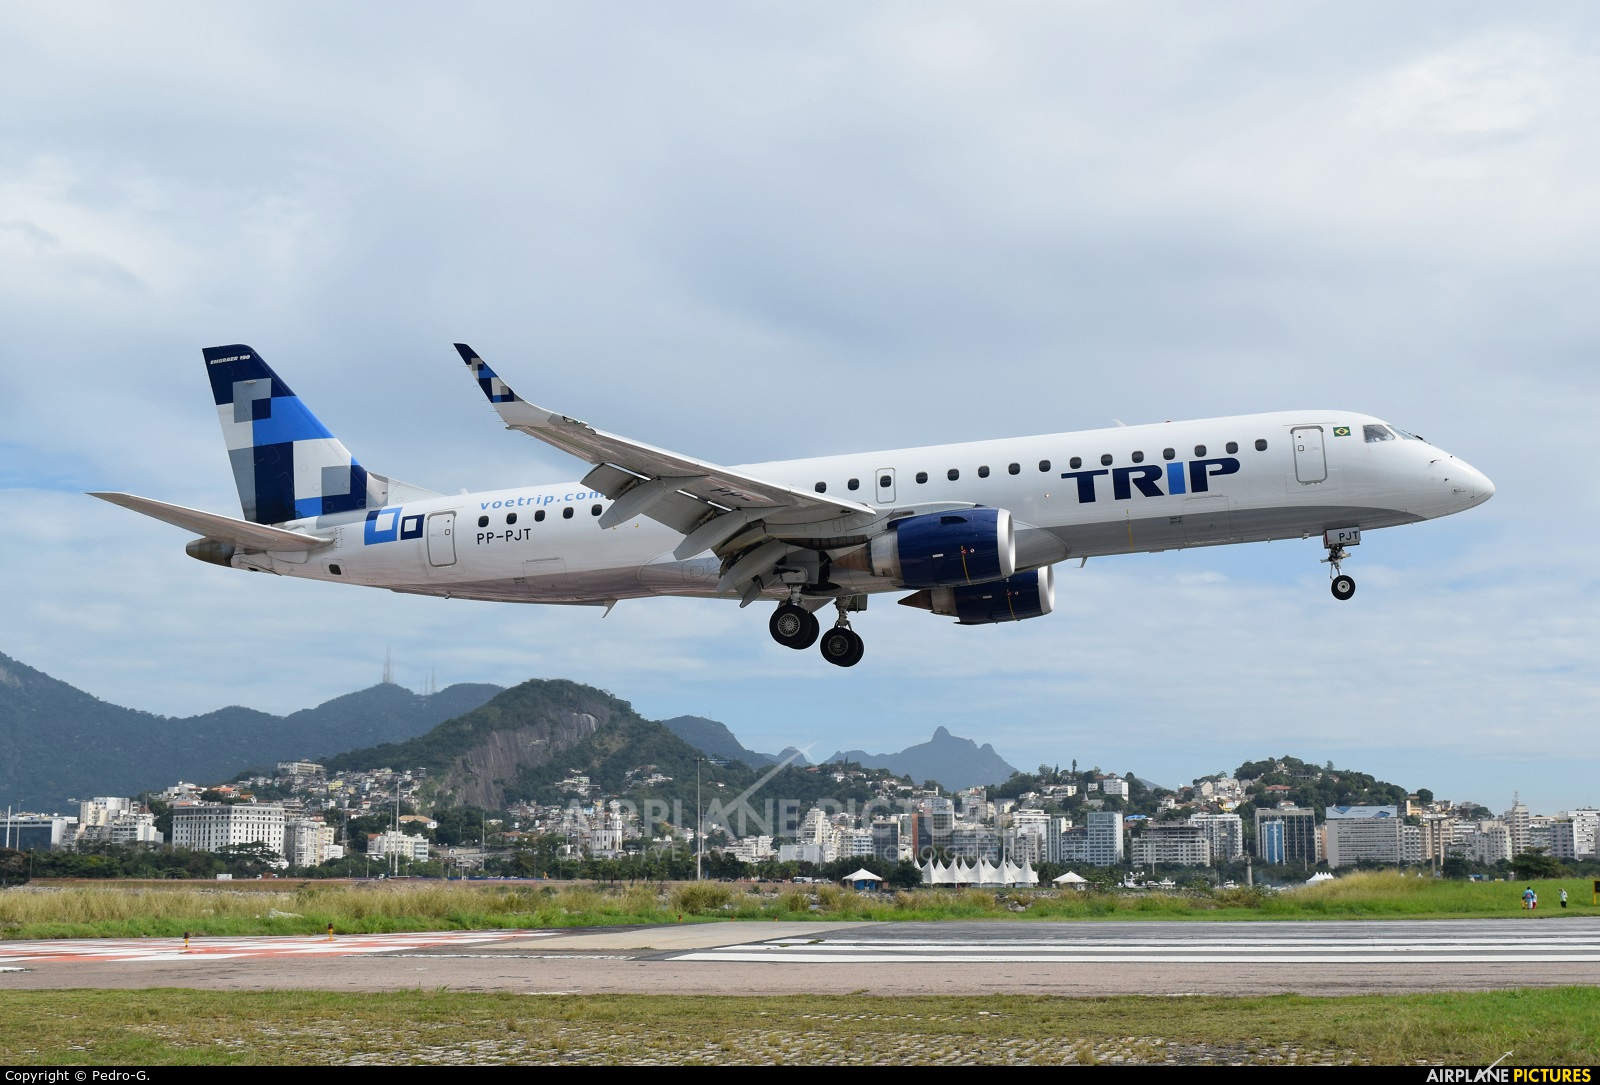 Trip Linhas Aéreas PP-PJT aircraft at Rio de Janeiro - Santos Dumont